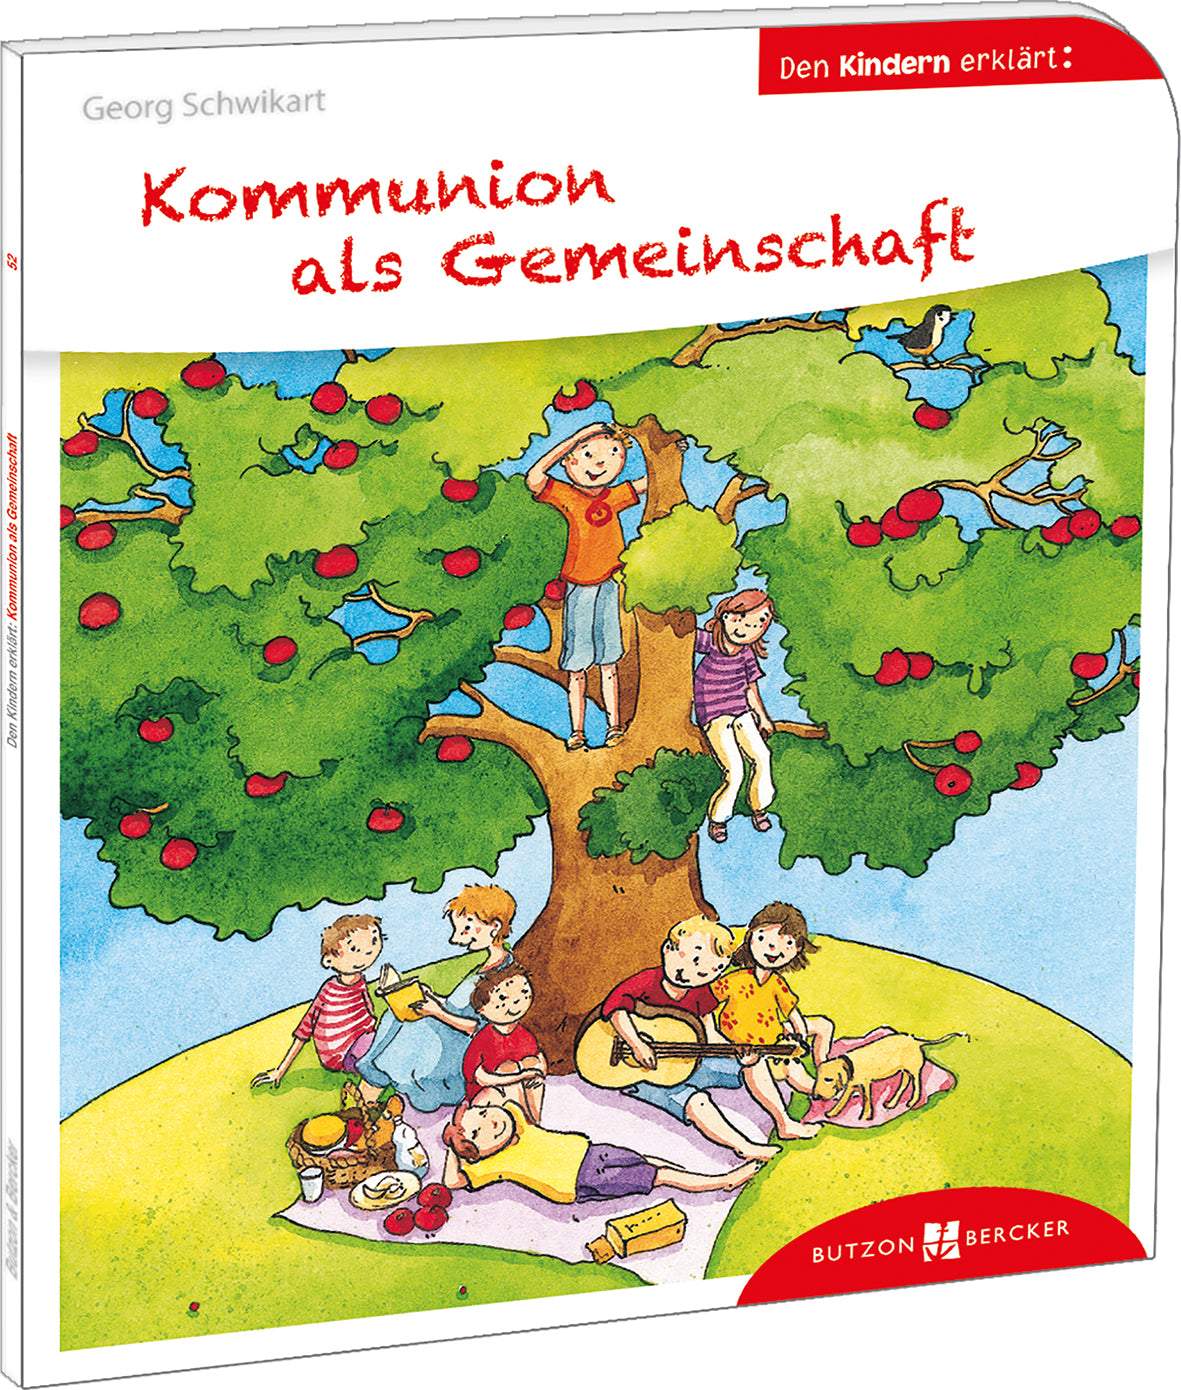 Kommunion als Gemeinschaft den Kindern erklärt-Butzon & Bercker-Bücher,Erstkommunion - Bücher,Kinderbücher